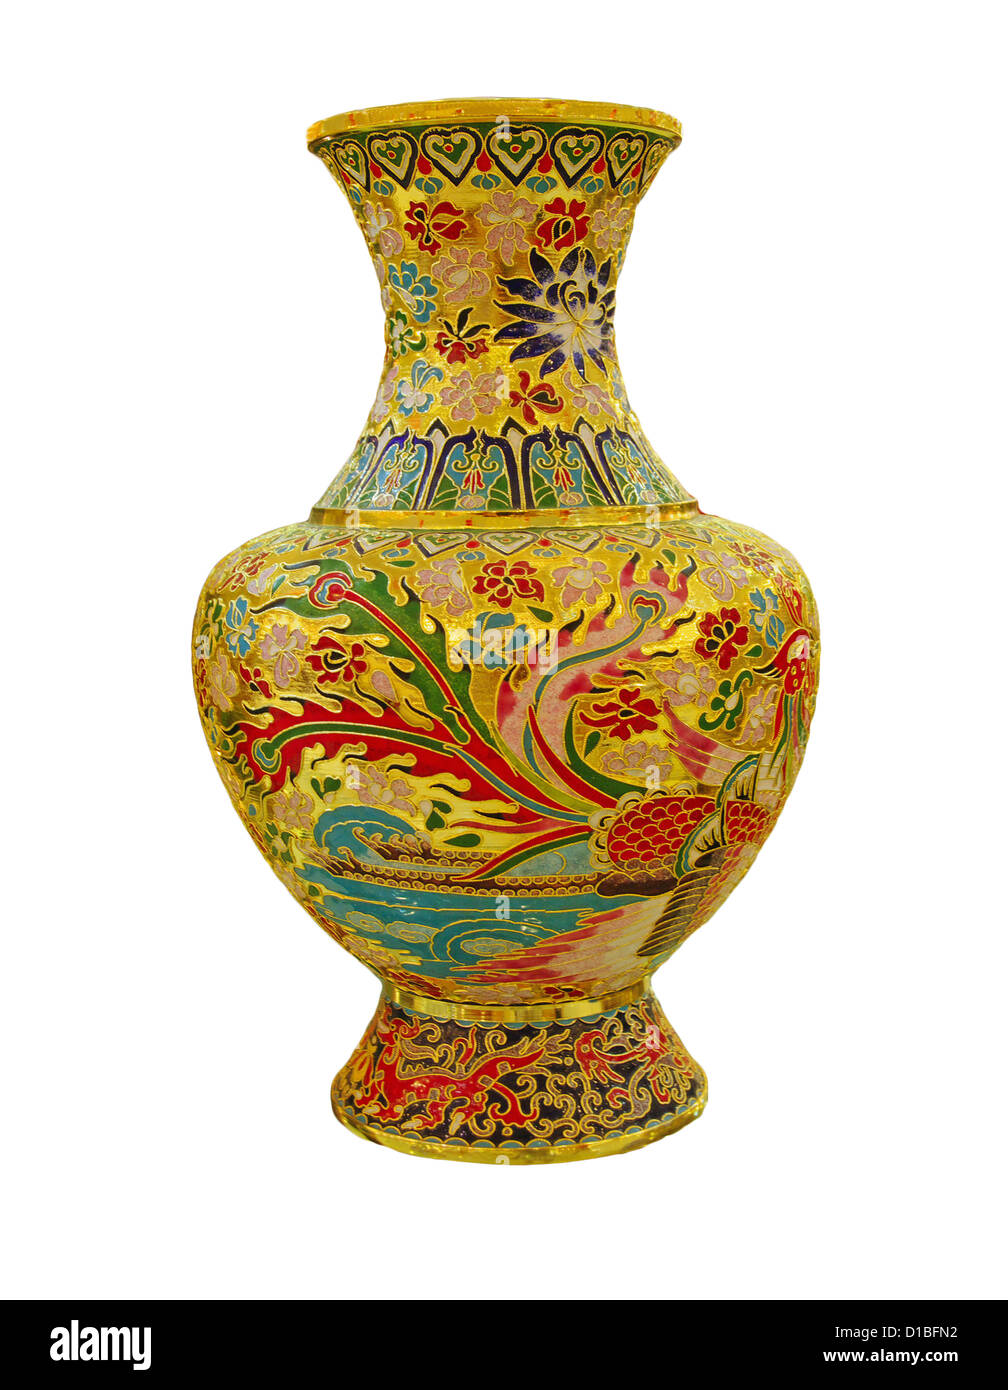 chinese vase on the plain back ground Stock Photo